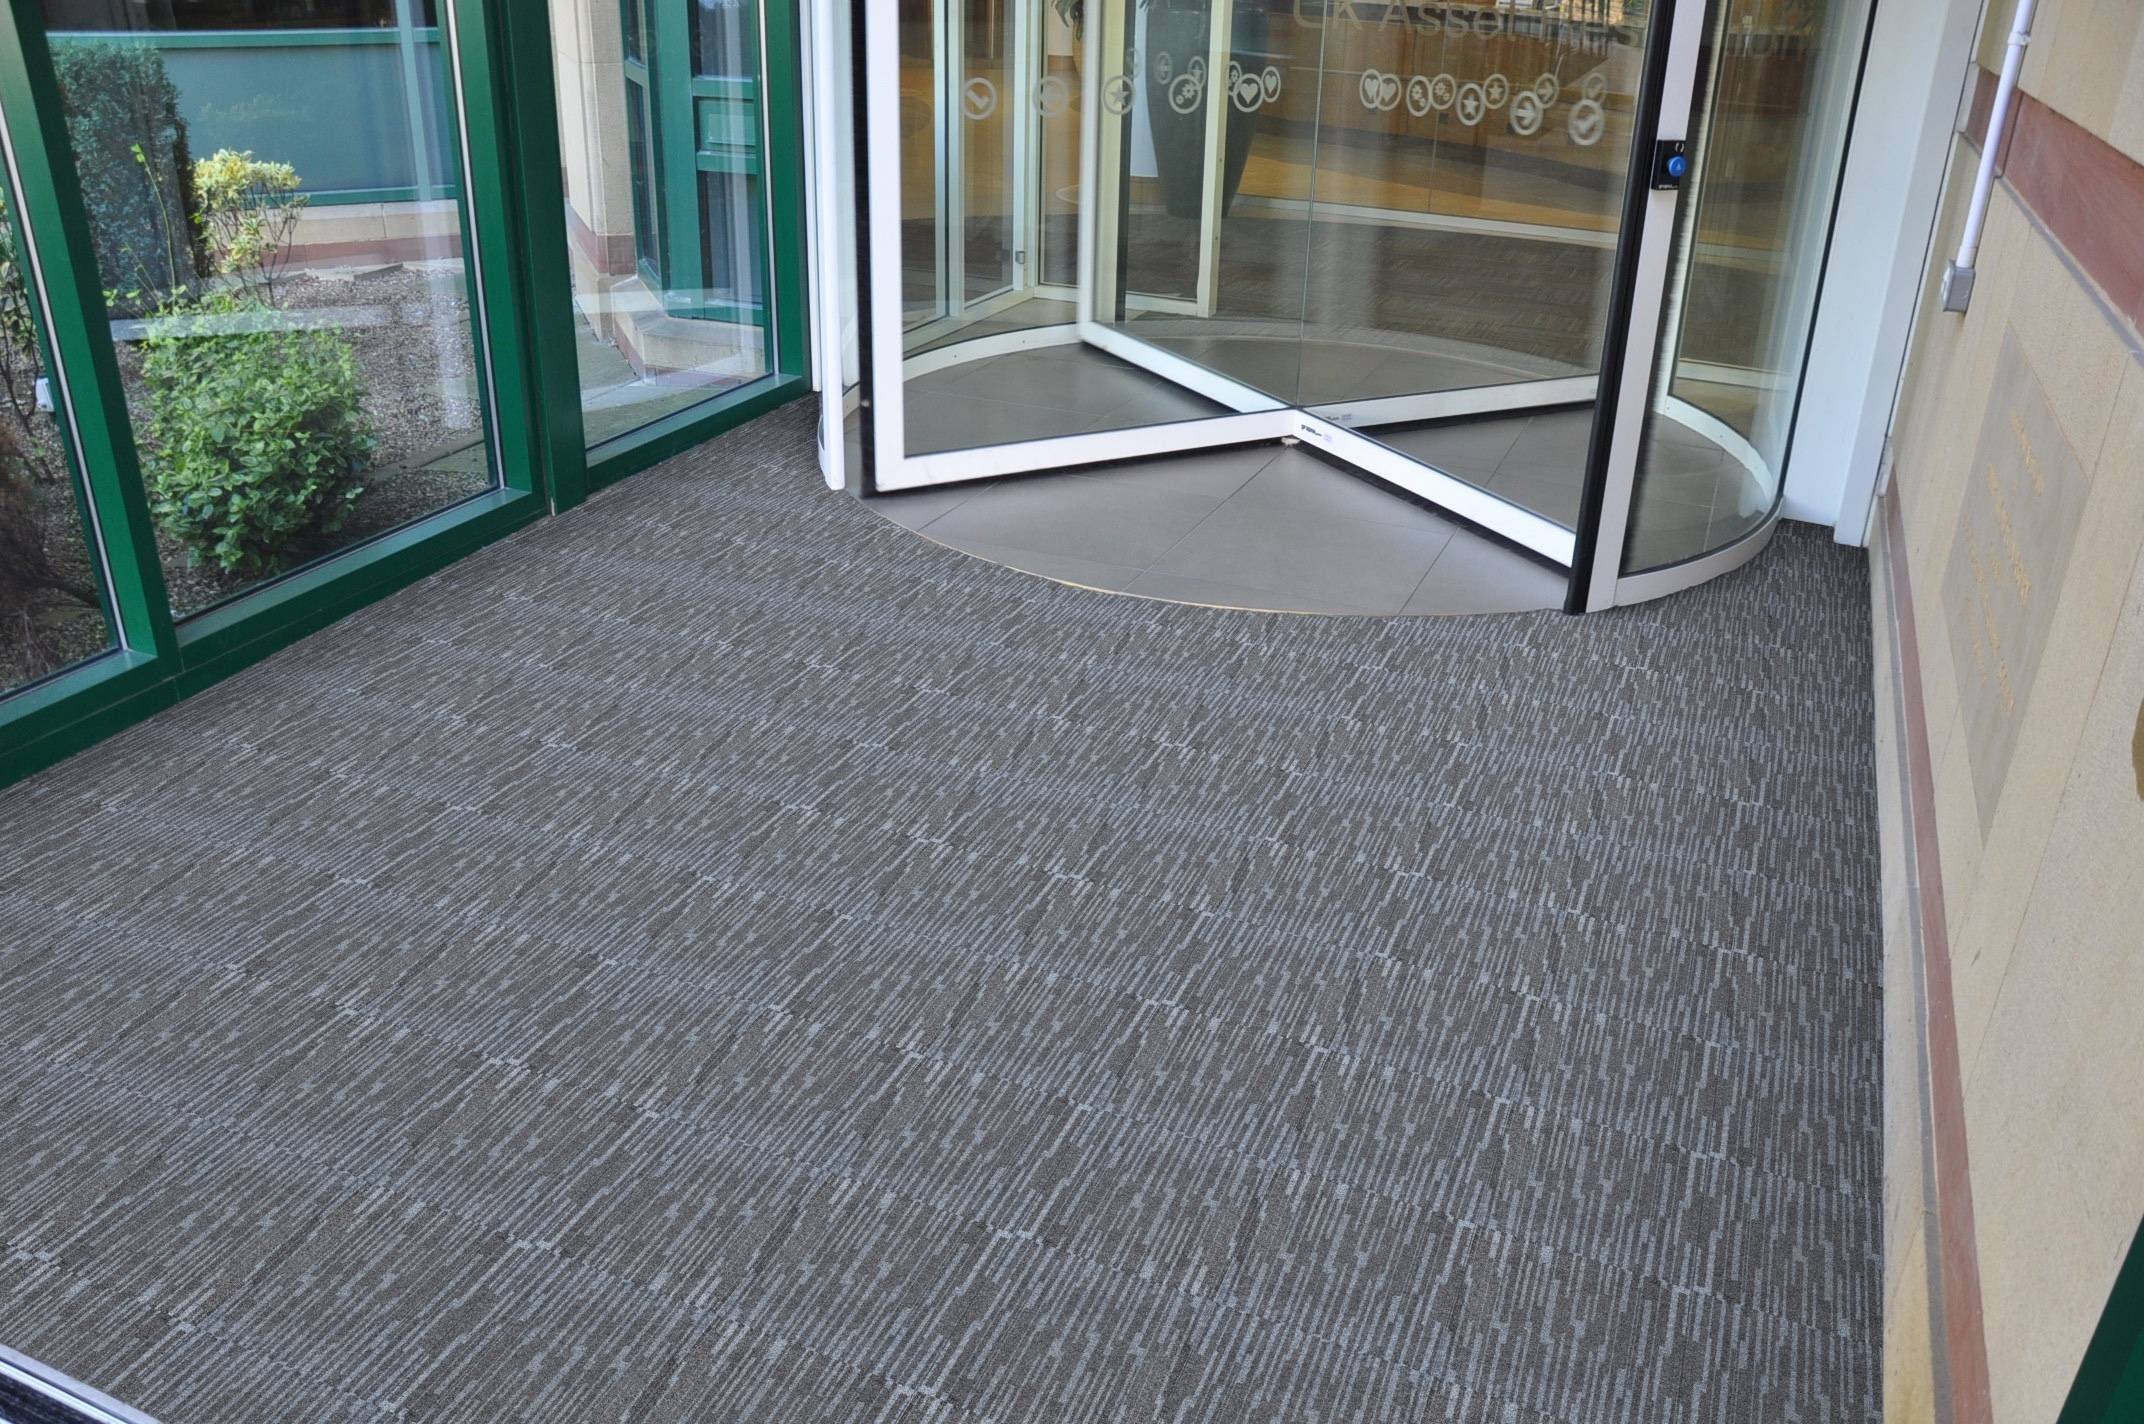 Paragon Workspace Entrance Design Carpet Design 1 Victor